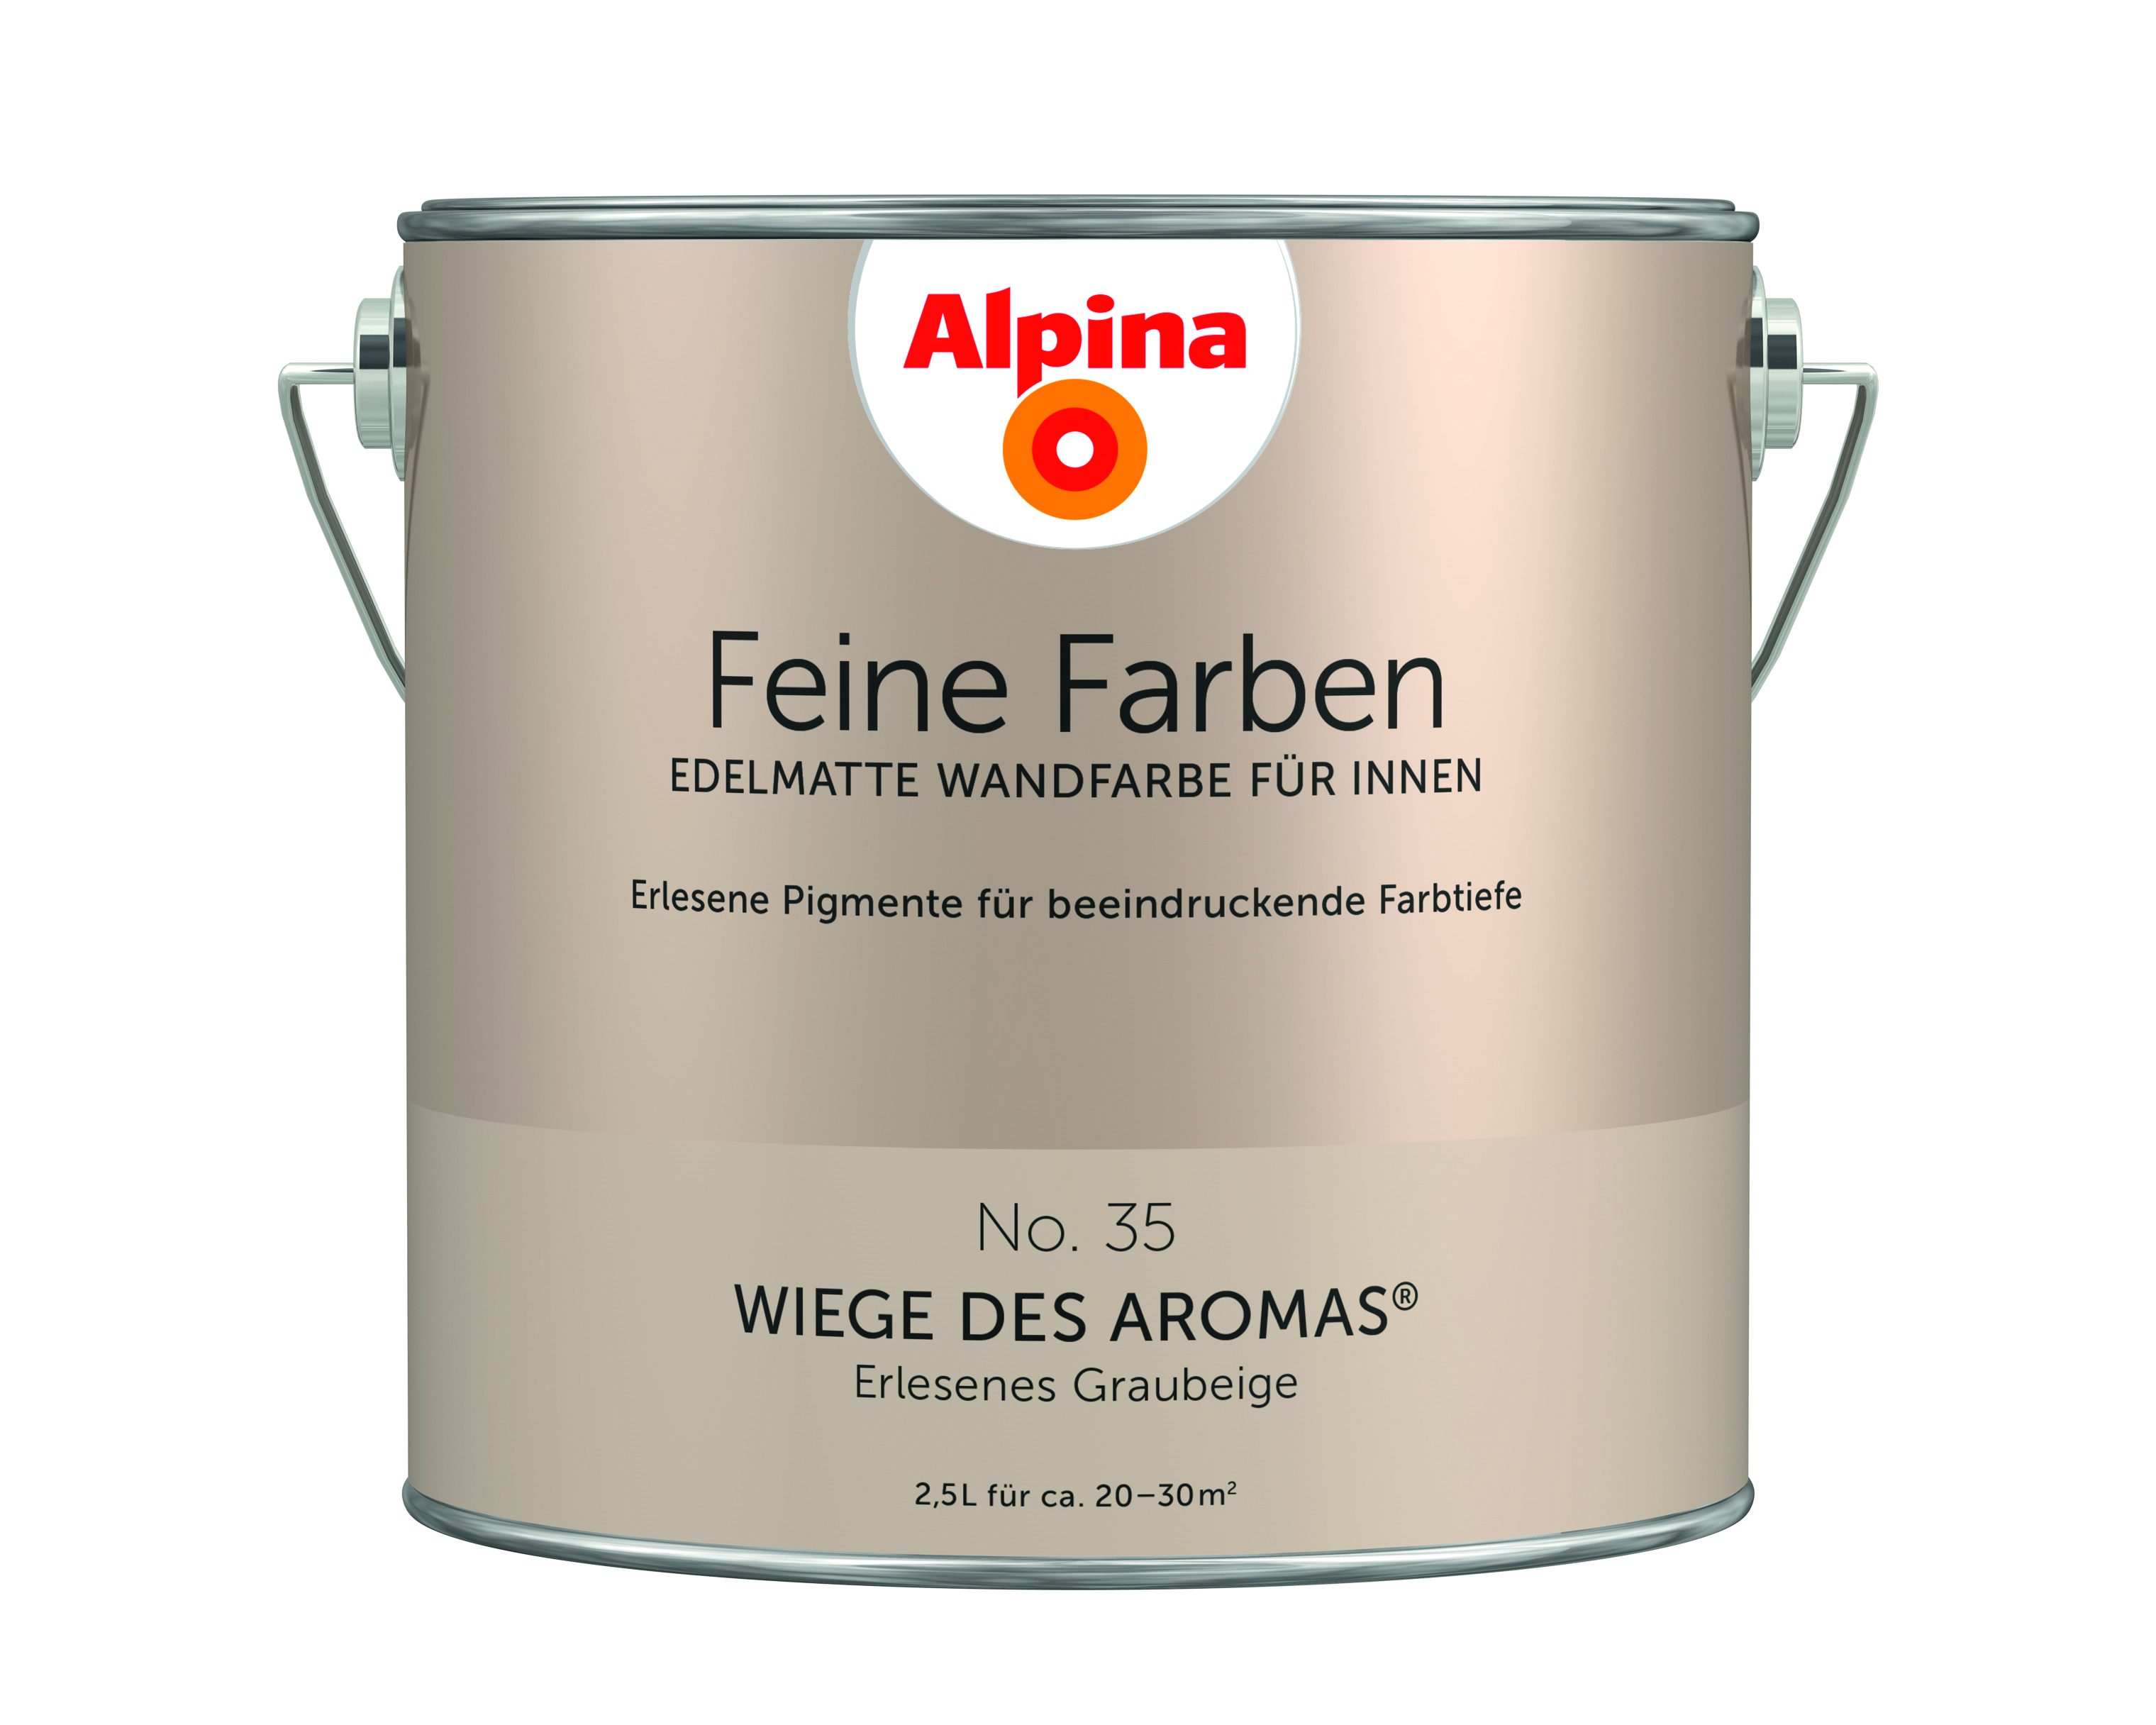 Alpina Feine Farben No. 35, Wiege des Aromas